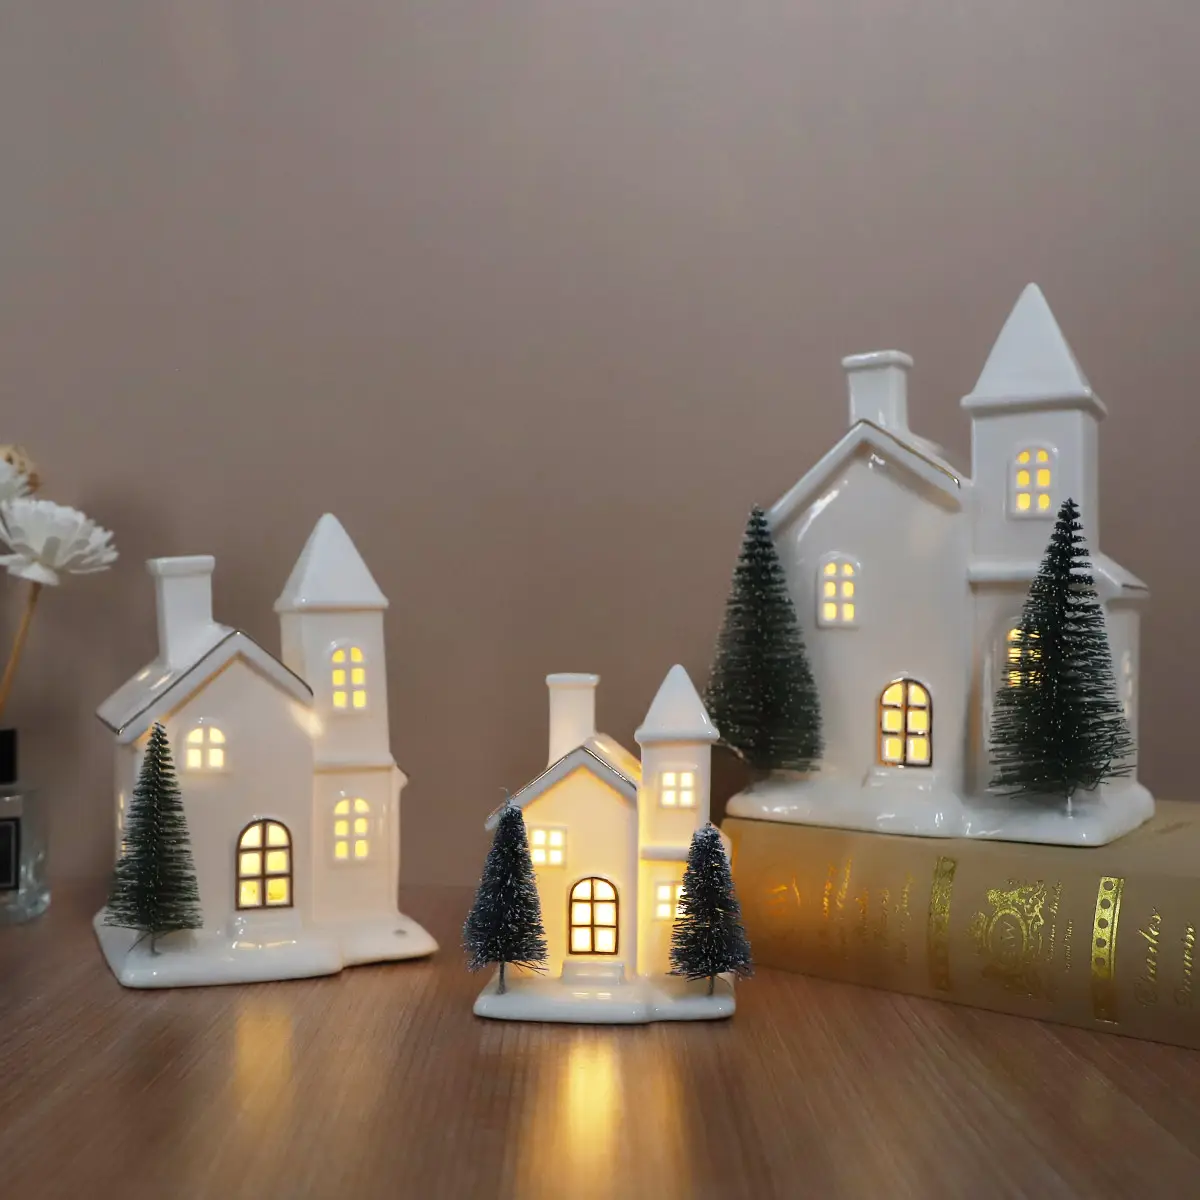 Porcellana pre illuminata LED natale inverno villaggio all'ingrosso schiarente avorio rosso ceramica desktop casa figurina con decorazione albero